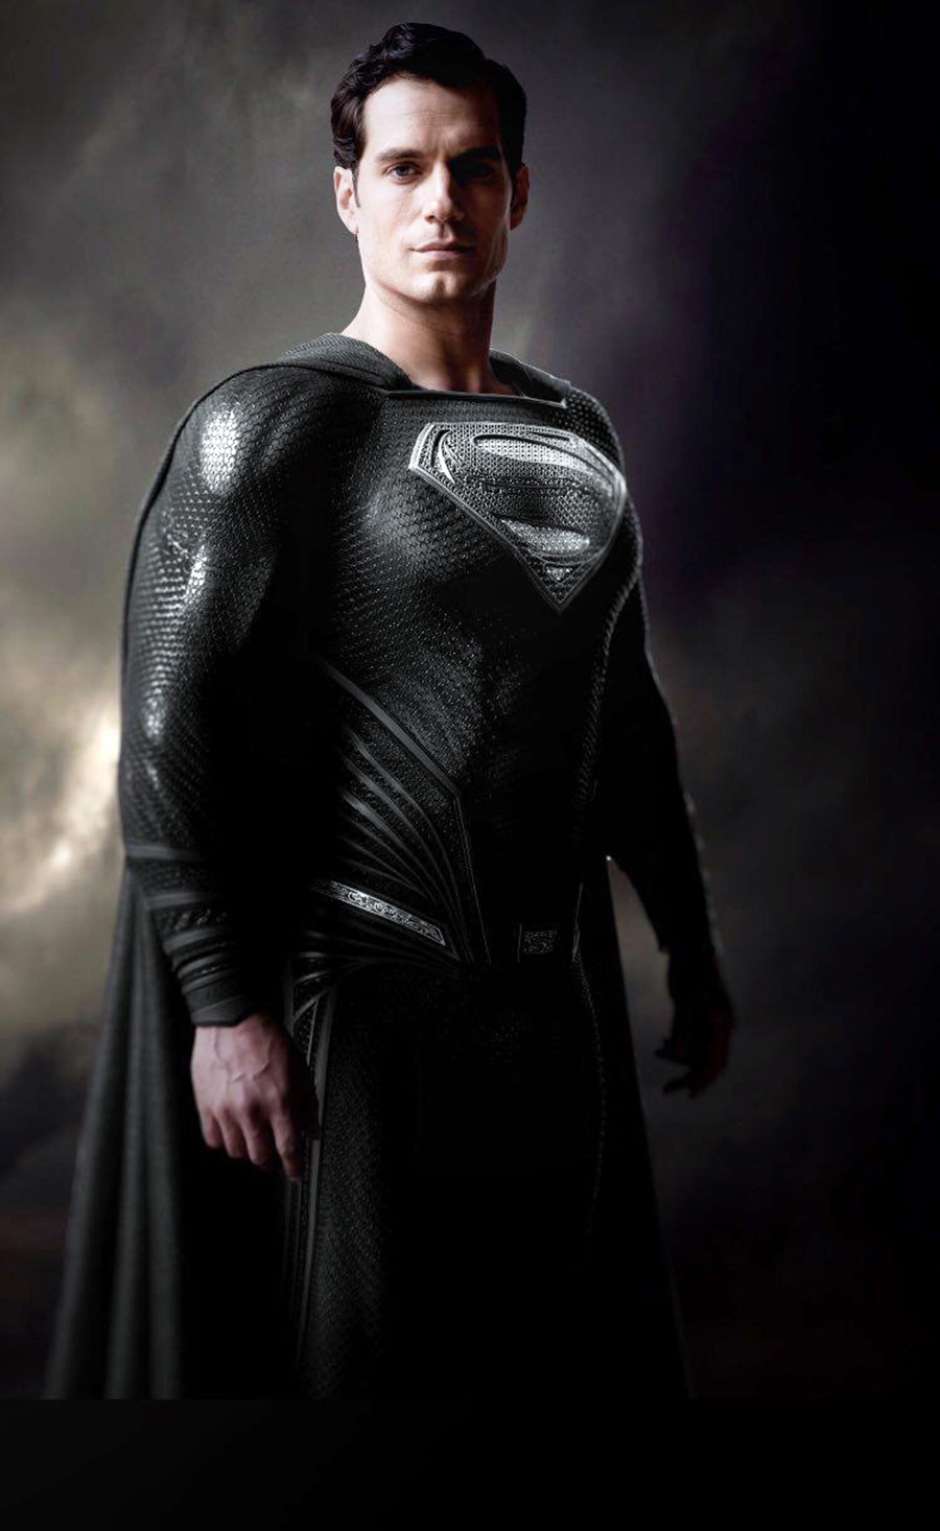 G1 - Compare personagens e uniformes de todos os filmes do Super-Homem -  notícias em Cinema